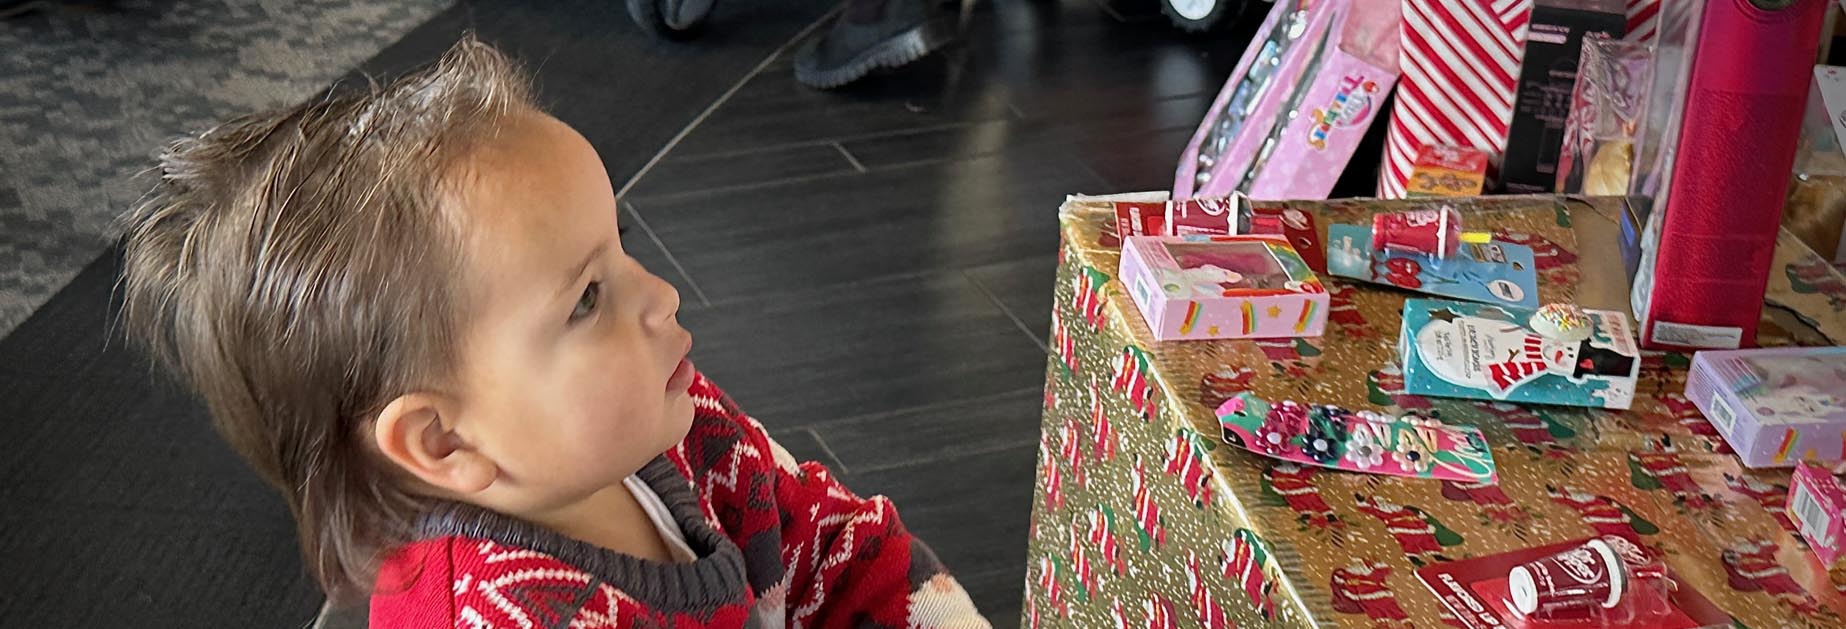 Một đứa trẻ bên cạnh những gói quà